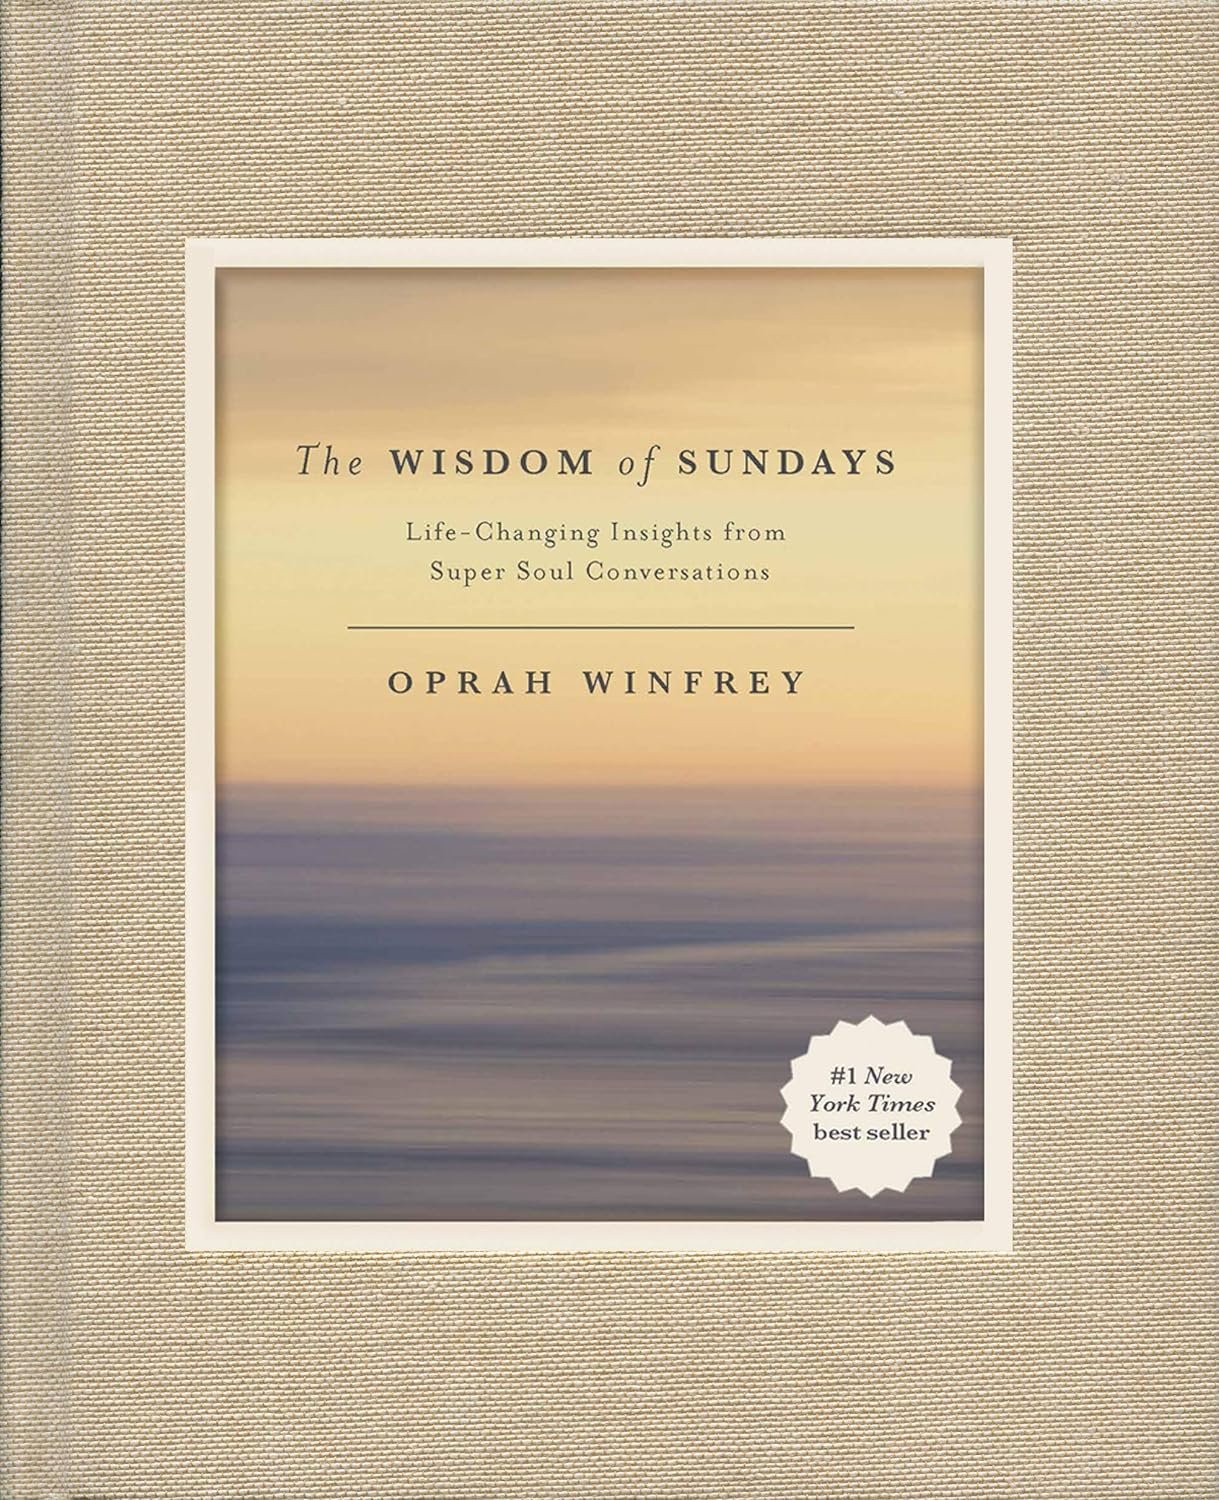 Wisdom of Sundays by Oprah Winfrey*